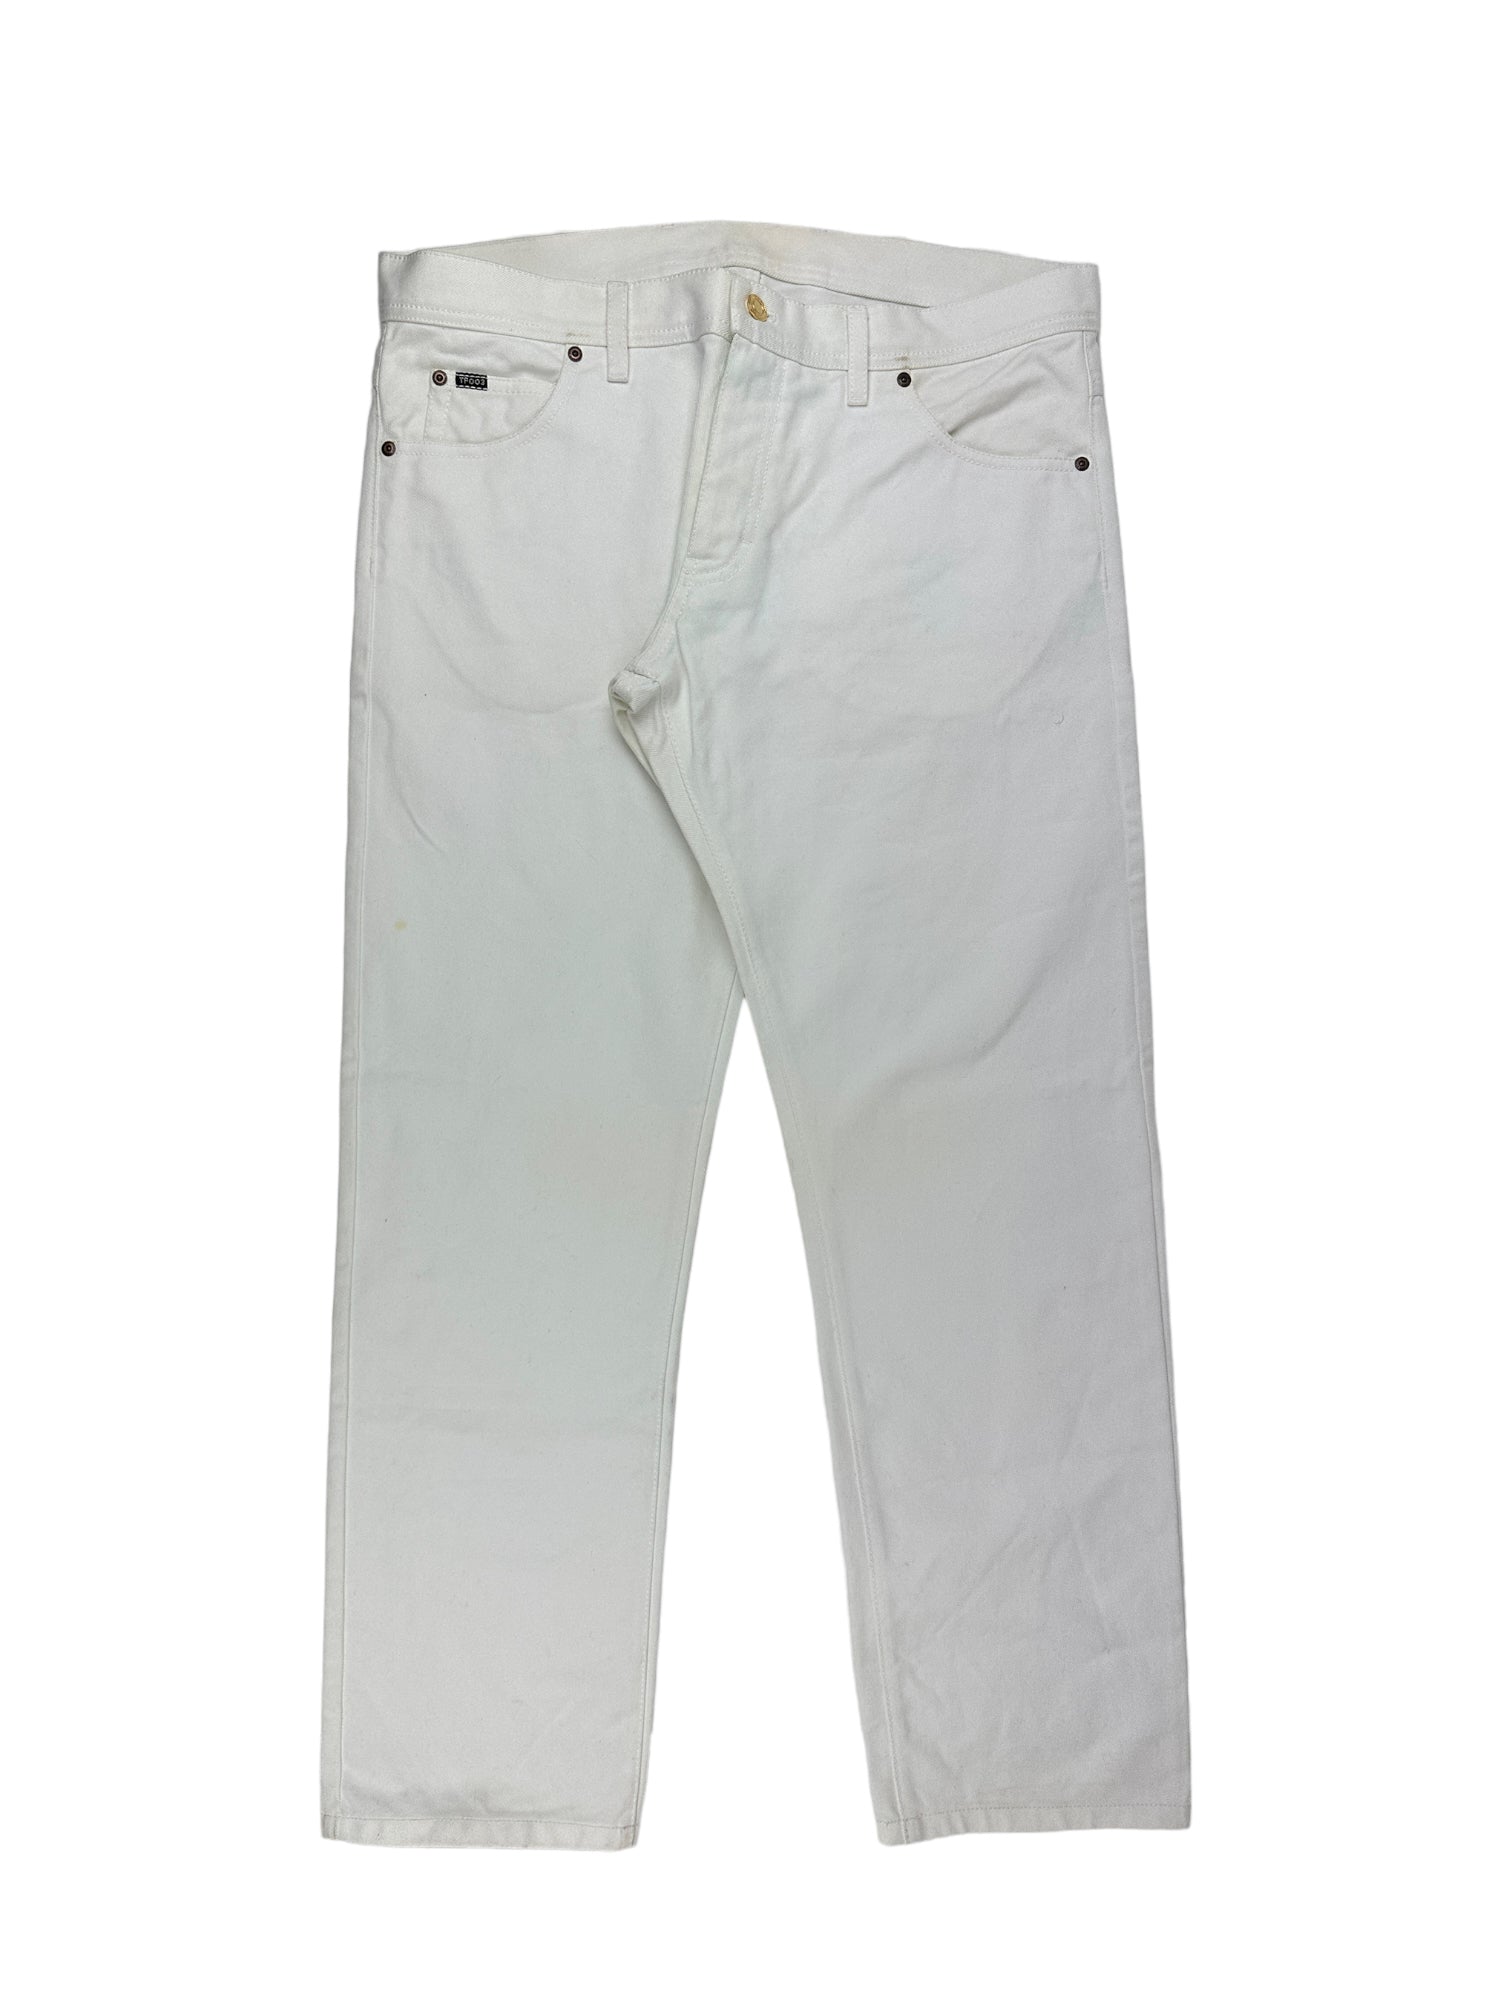 Tom Ford White 5-Pocket Jeans